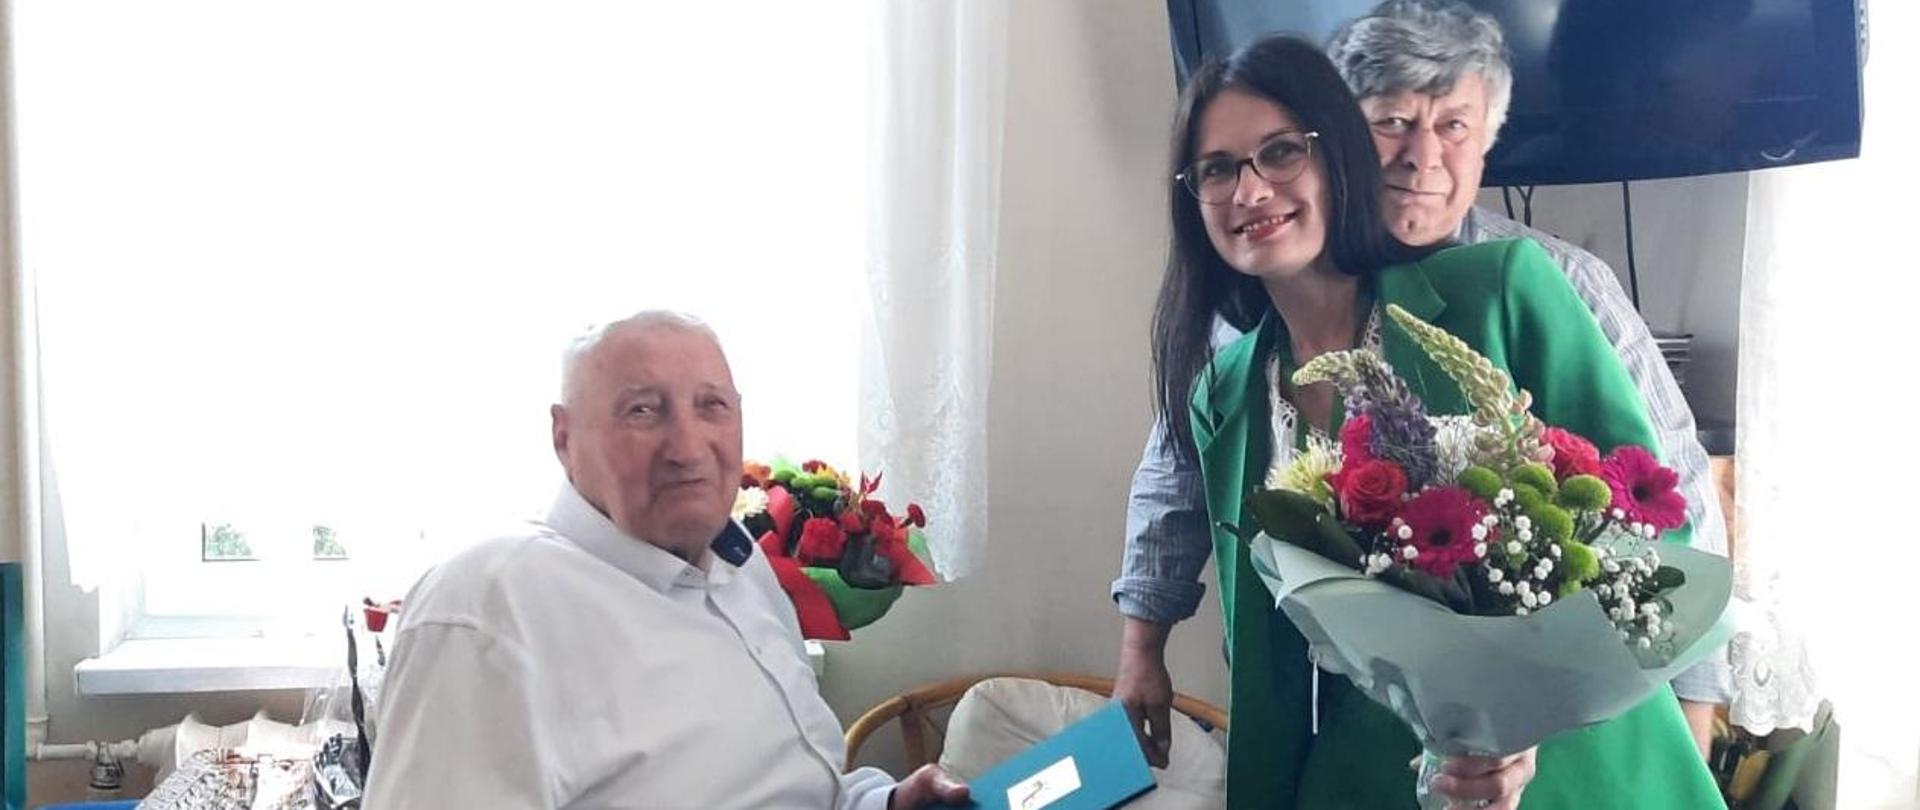 Uśmiechnięta kobieta trzyma w ręce bukiet kwiatów, za nią stoi mężczyzna, przed nimi siedzi starszy mężczyzna z ozdobną teczkę z logo KRUS w rękach